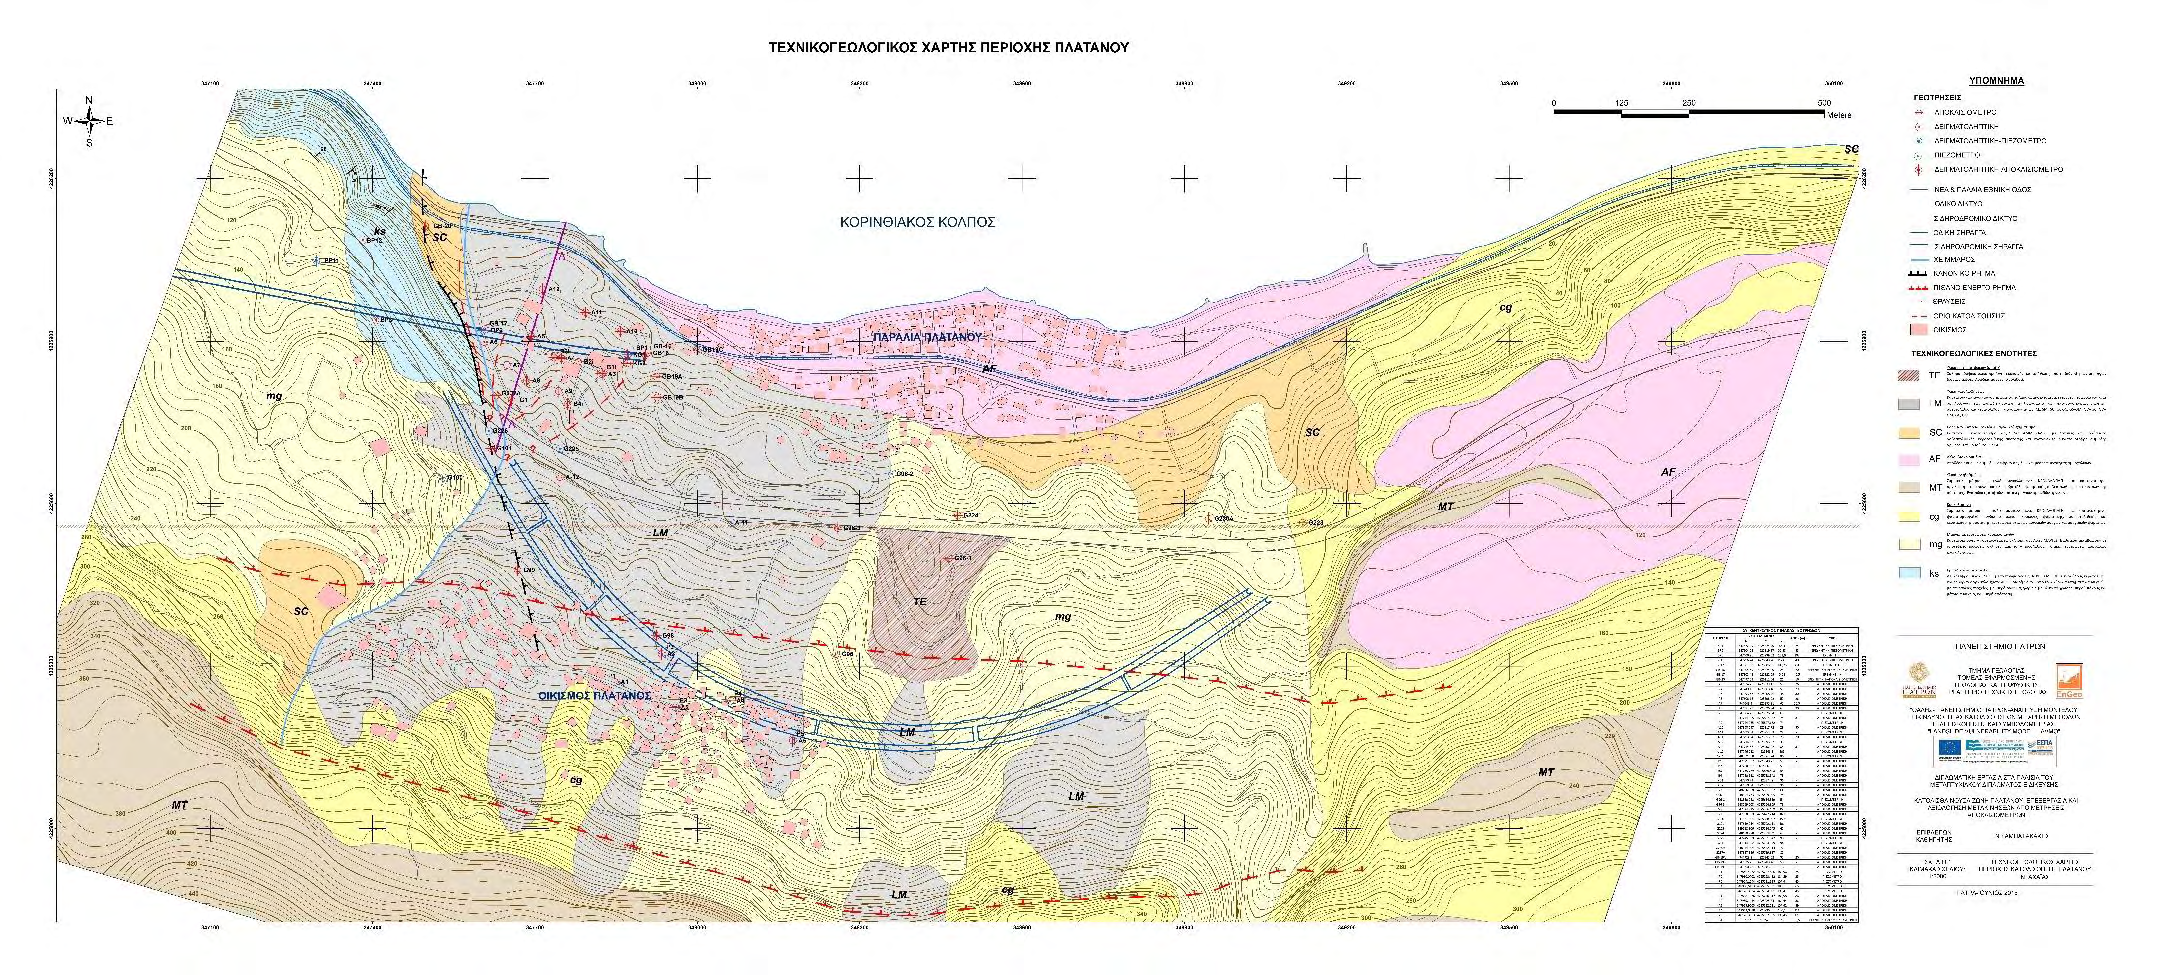 Χάρτης 1: Τεχνικογεωλογικός χάρτης της περιοχής Πλατάνου,